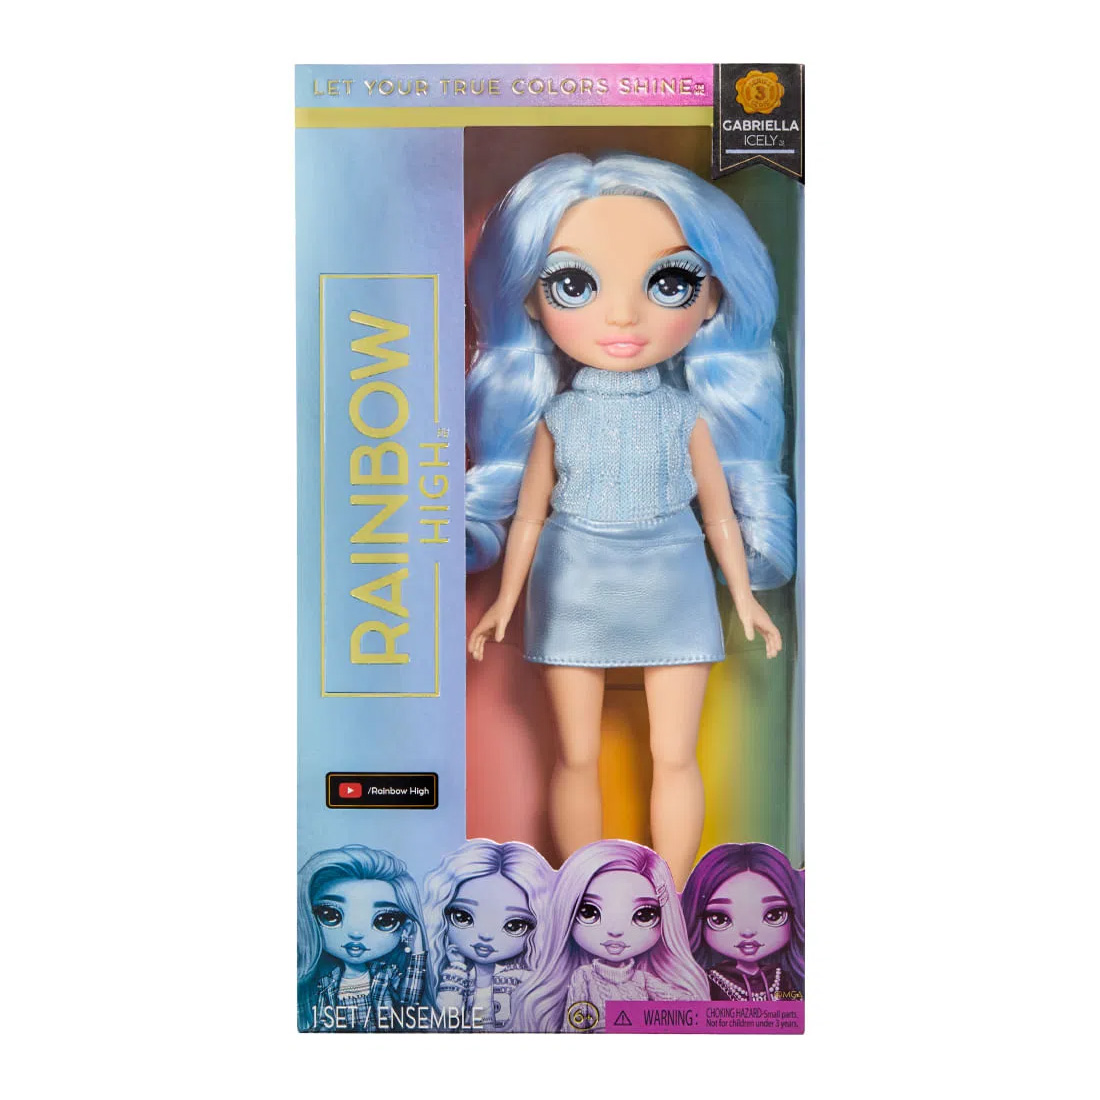 Rainbow High Gabriella Icely Rainbow High Budget Dolls Doll | The Toy Pool